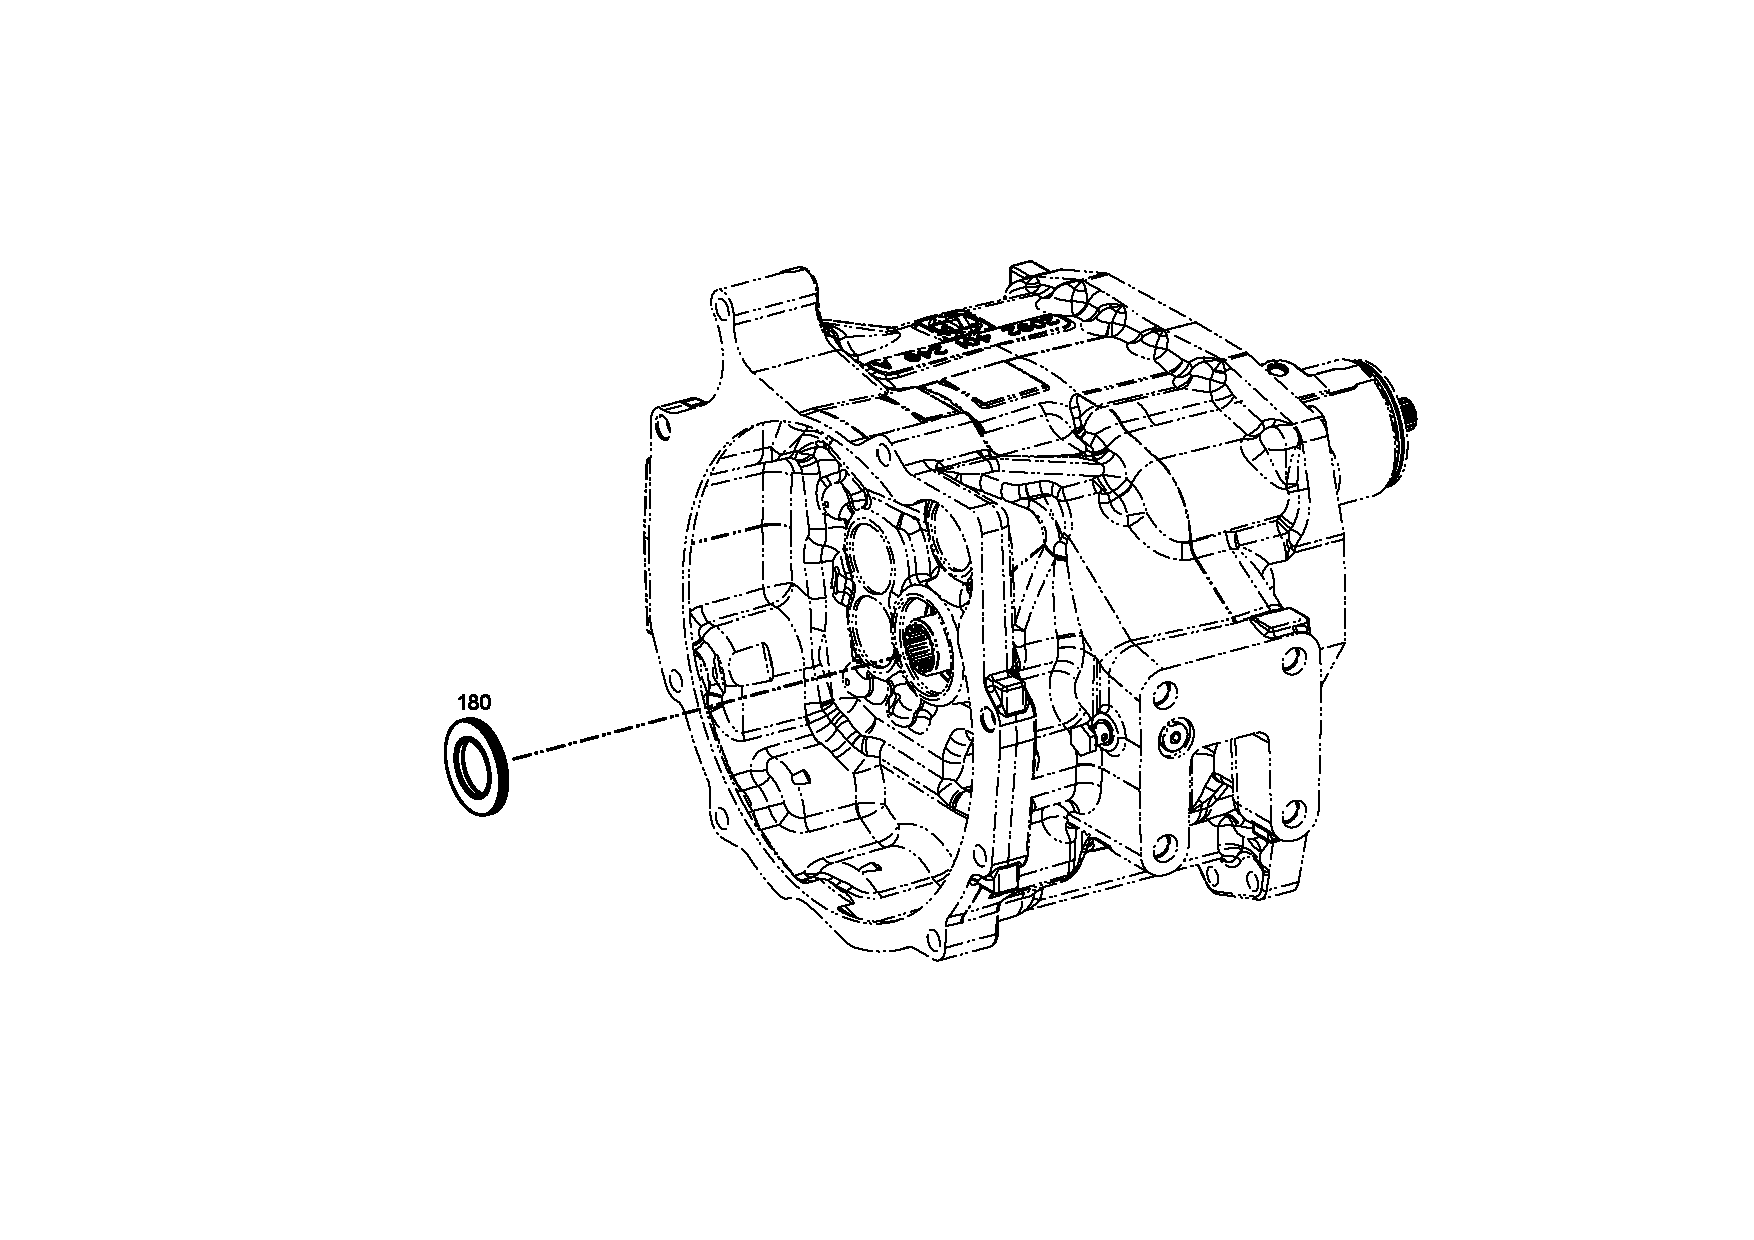 drawing for NOVABUS 072134305 - CAP SCREW (figure 2)